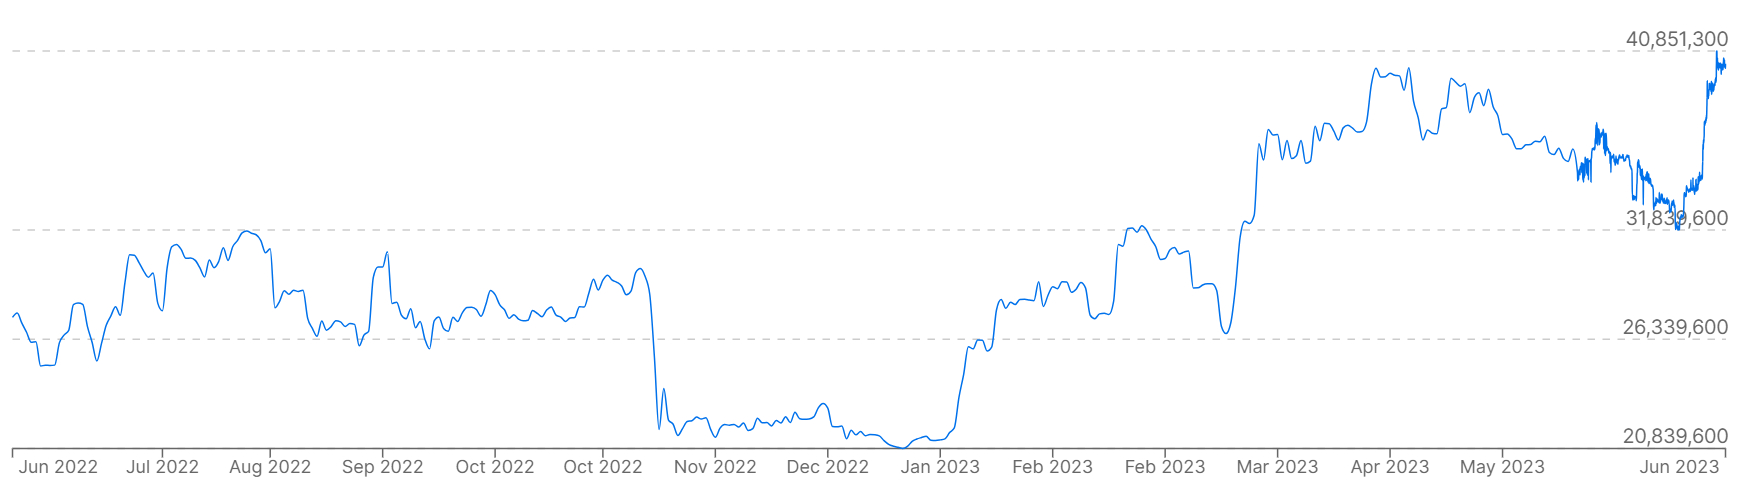 Un gráfico que muestra los precios de Bitcoin frente al won surcoreano durante el año pasado.